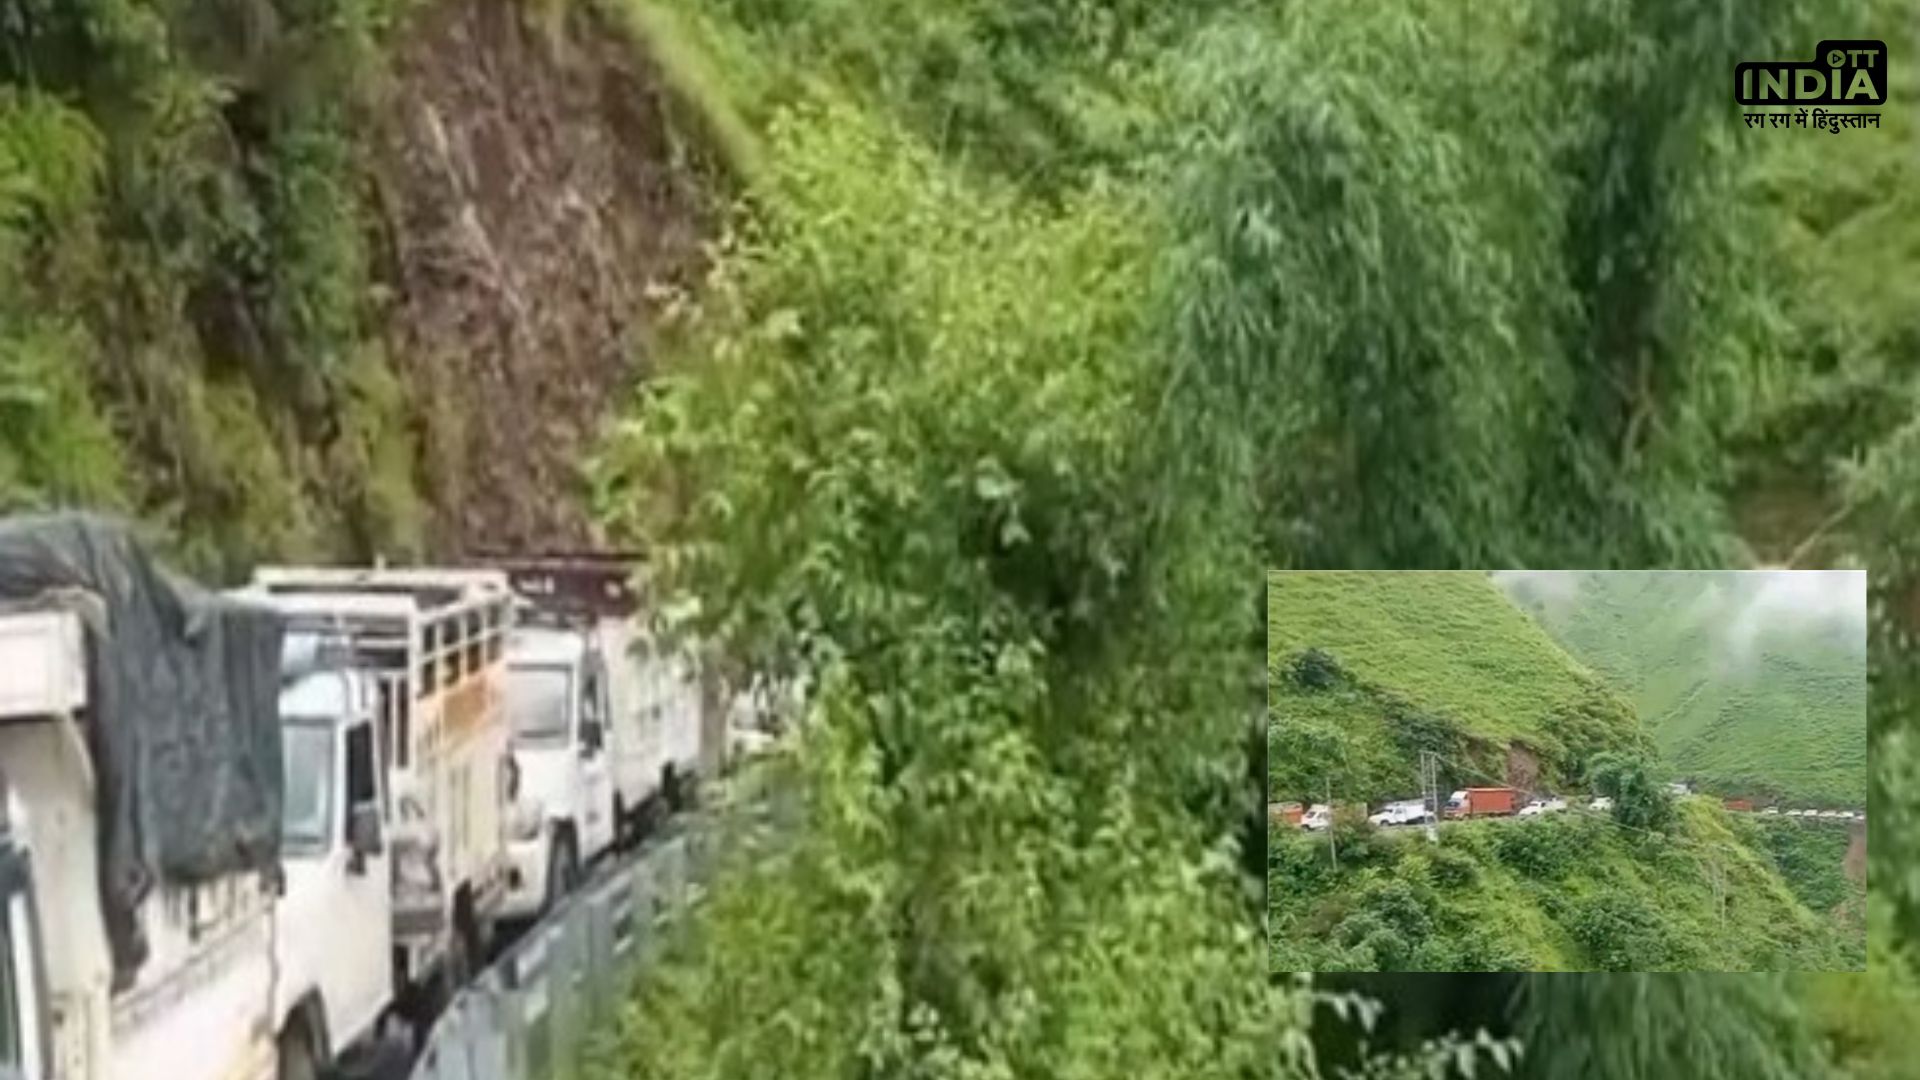 Himachal Pradesh News : भारी बारिश के बाद कुल्लू-मंडी हाईवे क्षतिग्रस्त, सैकड़ों वाहन फंसे